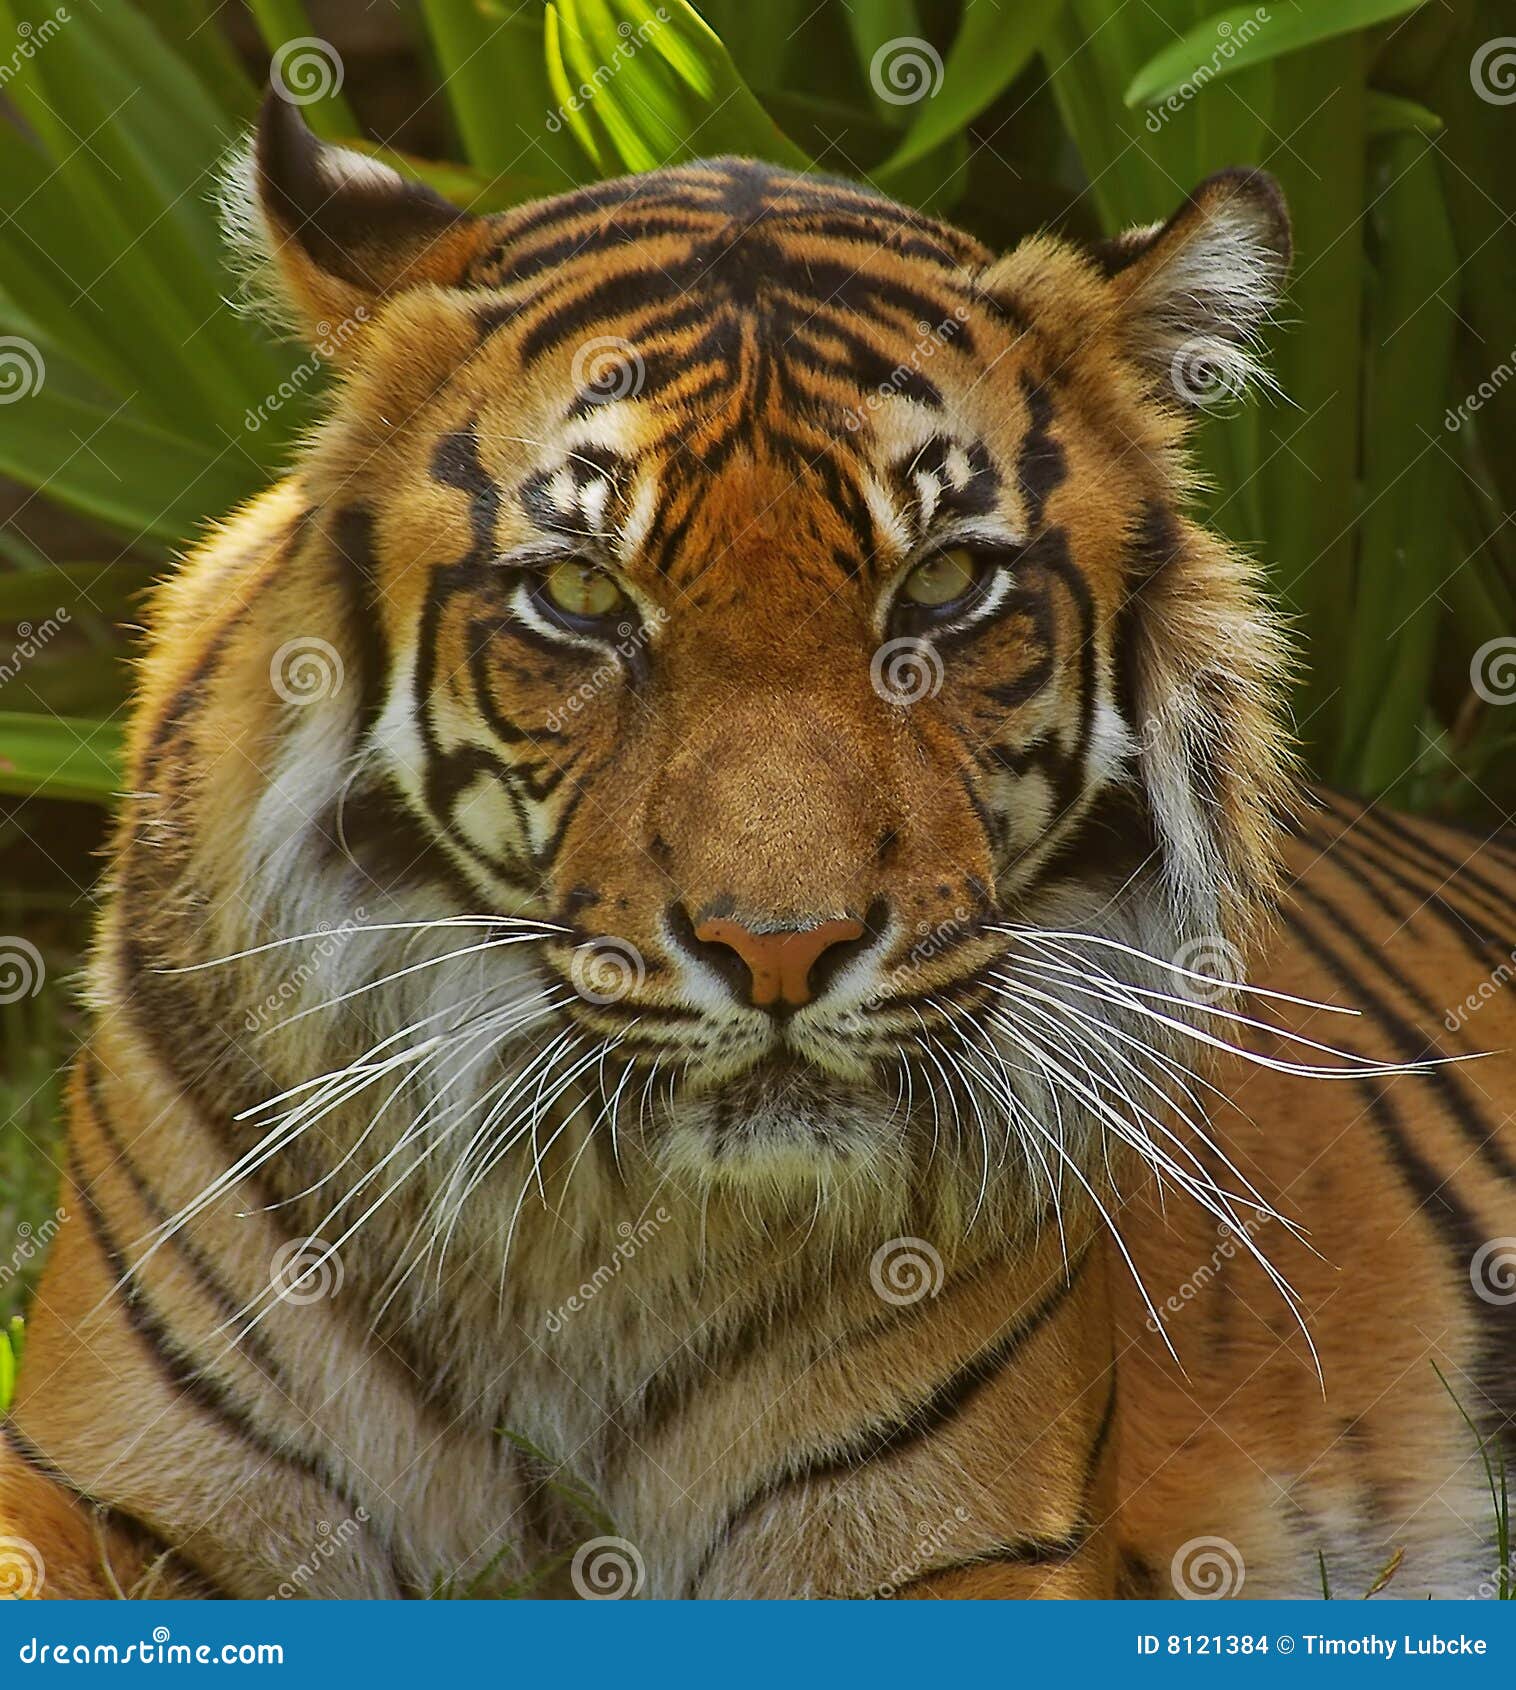 sumatran tigress.